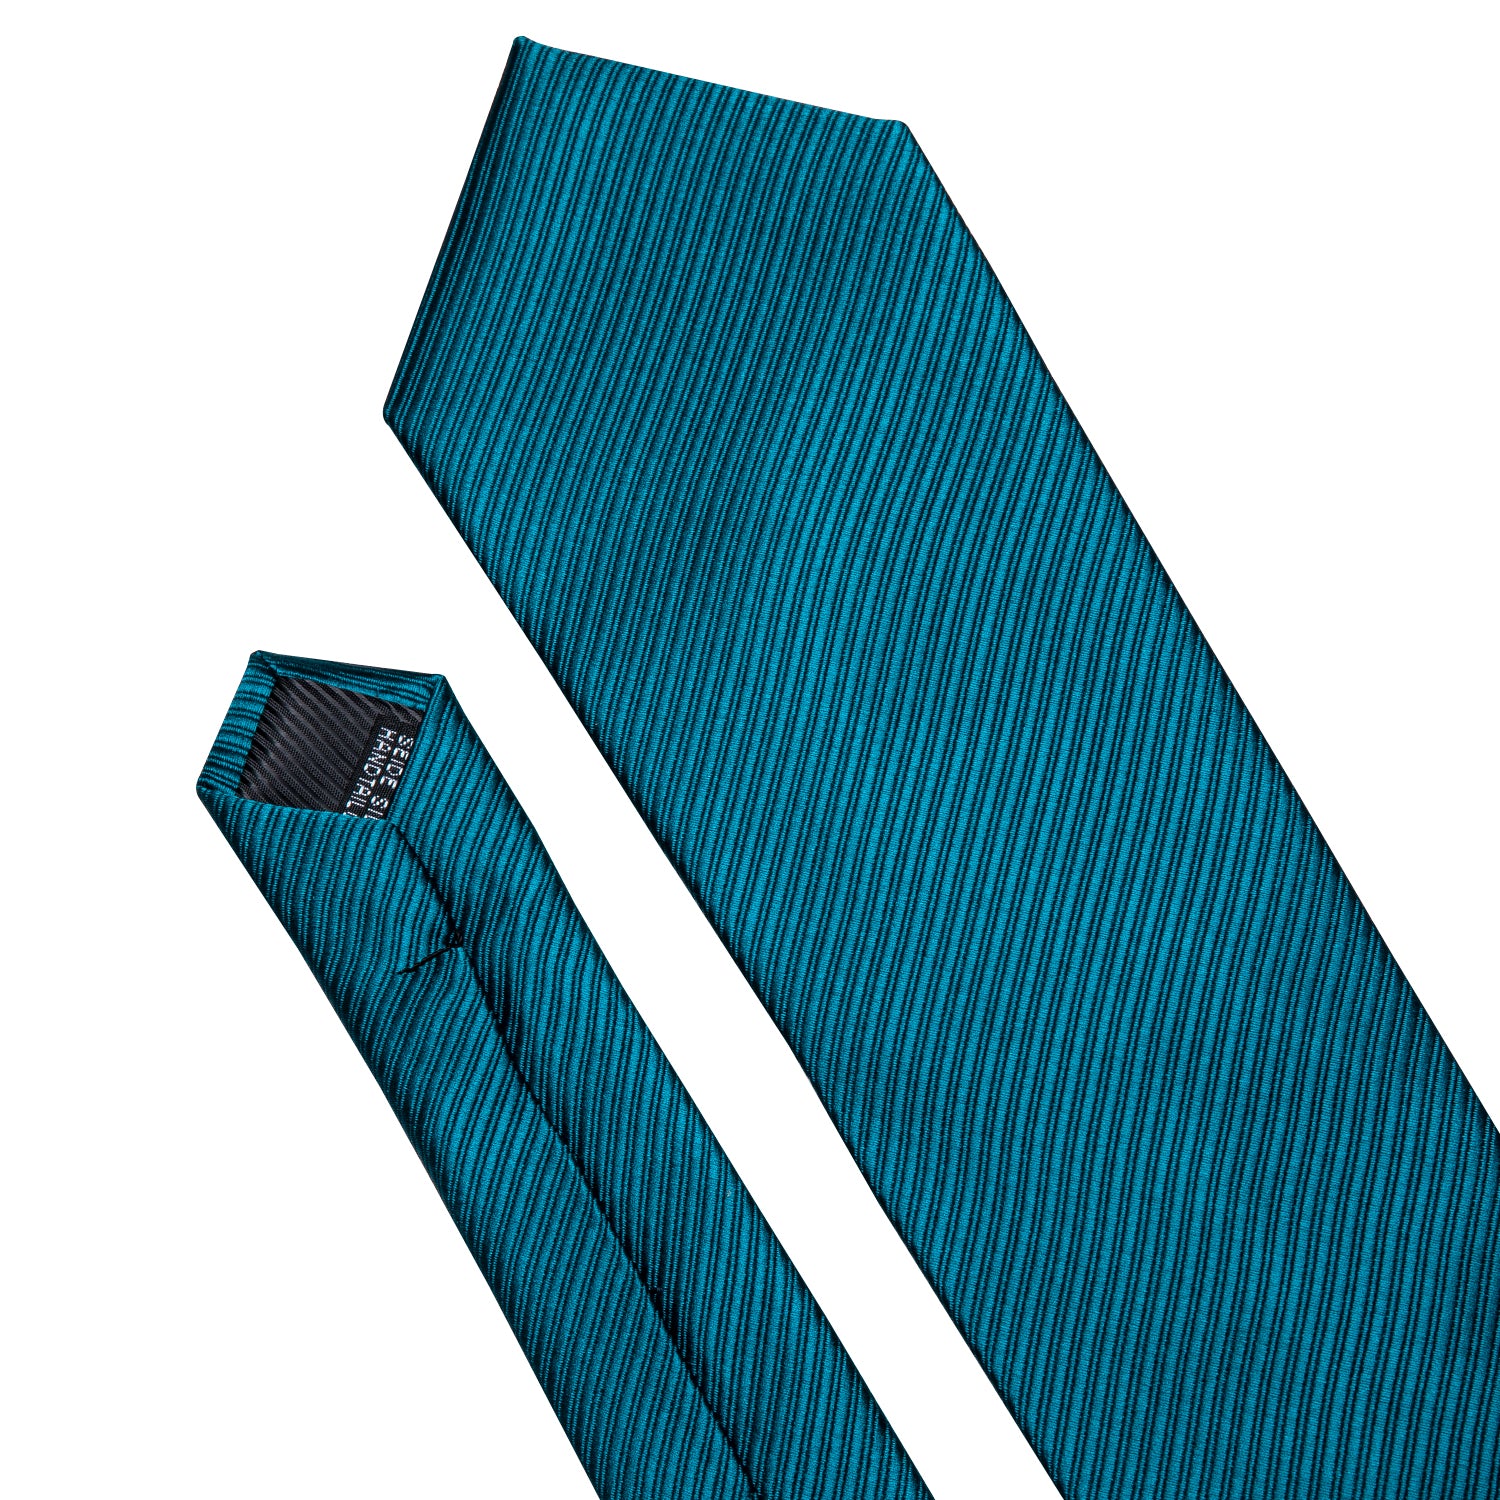 Solid Dark Blue Stripe Tie Hanky Cufflinks Set